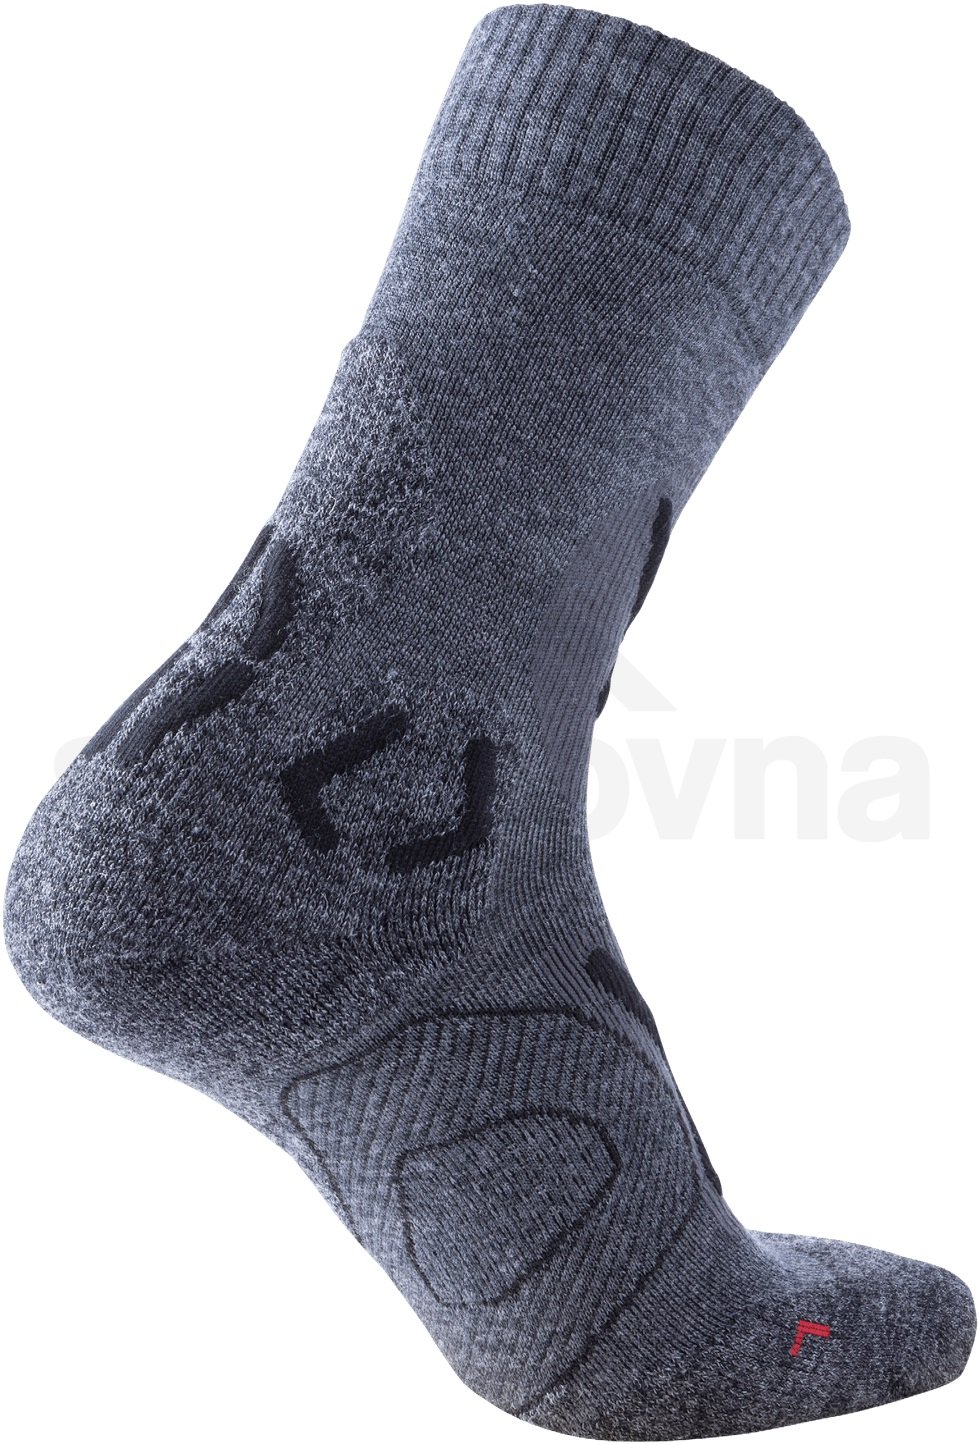 Ponožky UYN Trekking Cool Merino - šedá/černá